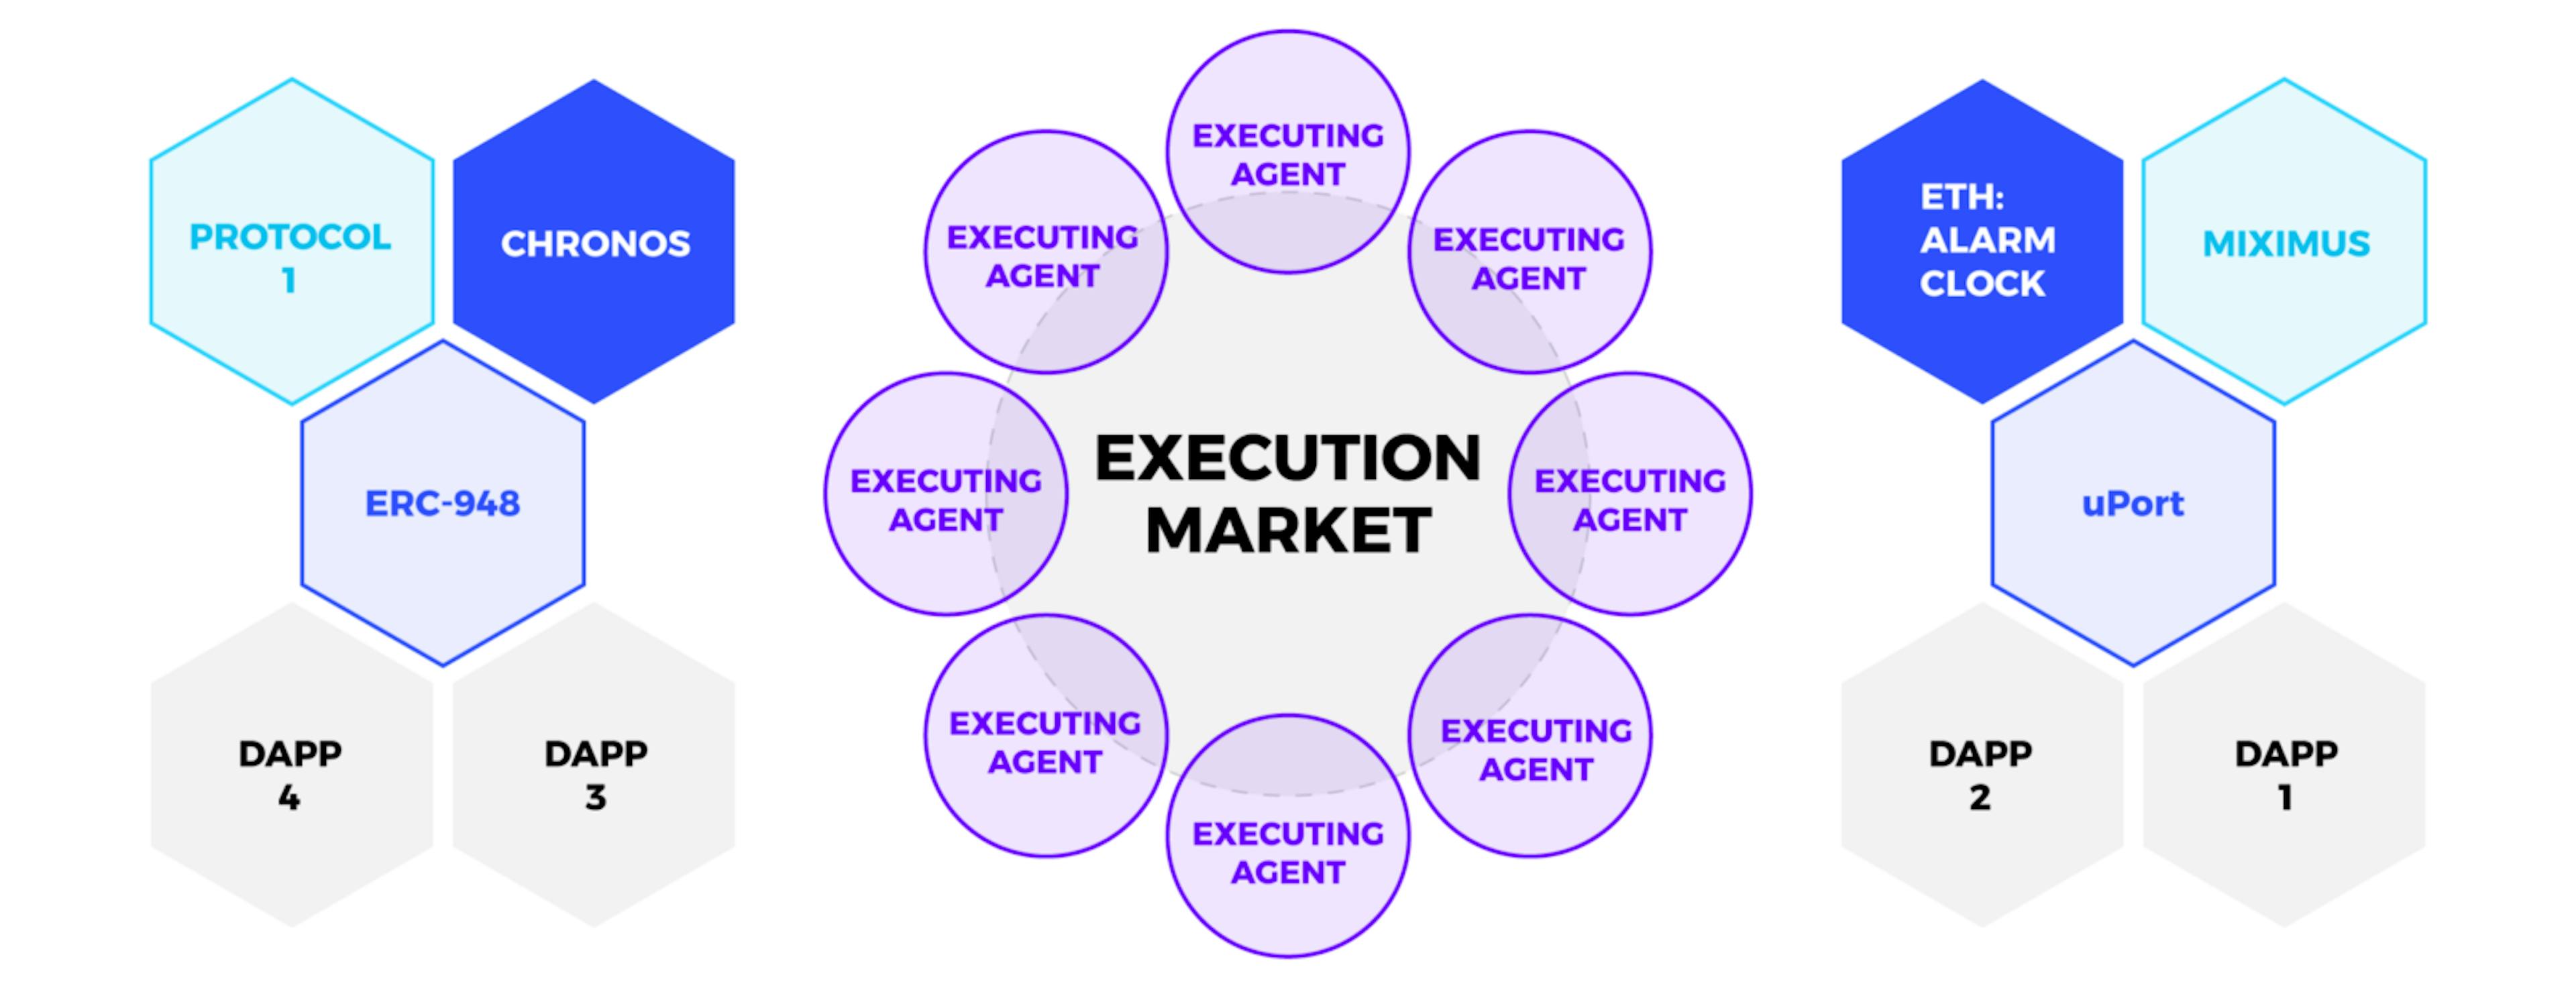 /execution-markets-automate-protocols-and-earn-crypto-67f64911010e feature image